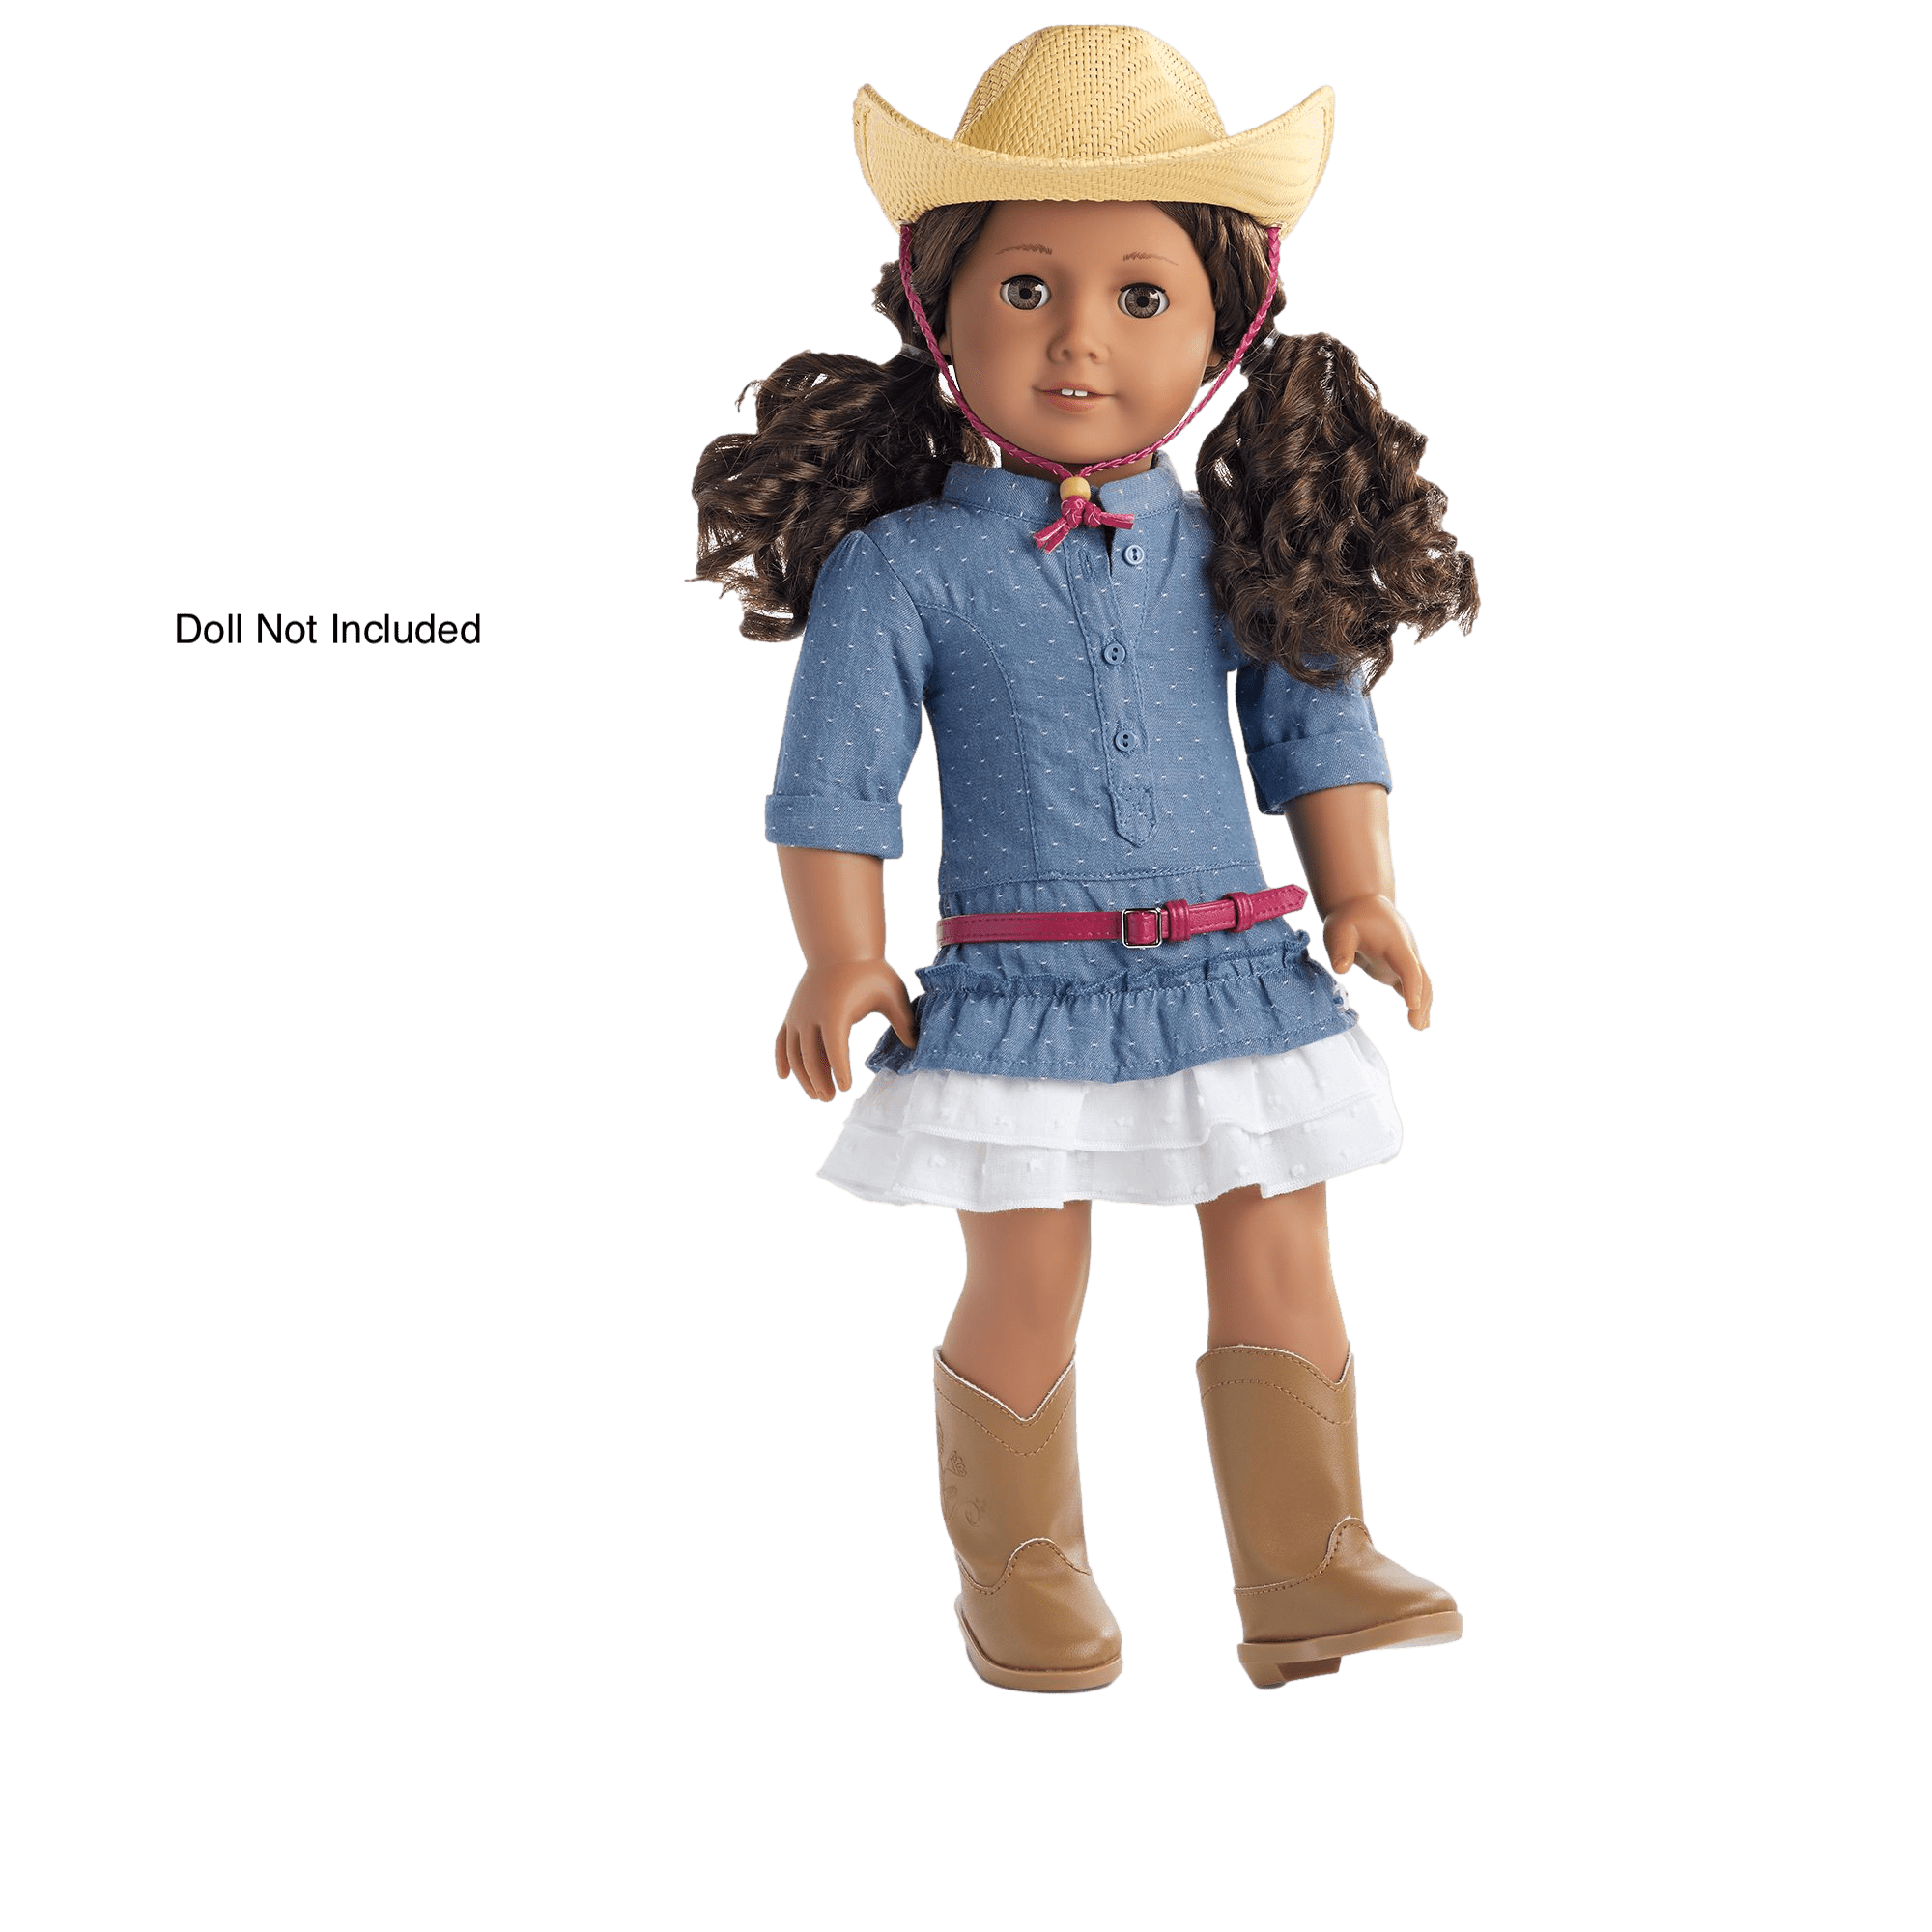 NEW ~brown western cowboy hat~for 18" dolls  AMERICAN FASHION GIRL DOLLS  $ SALE 